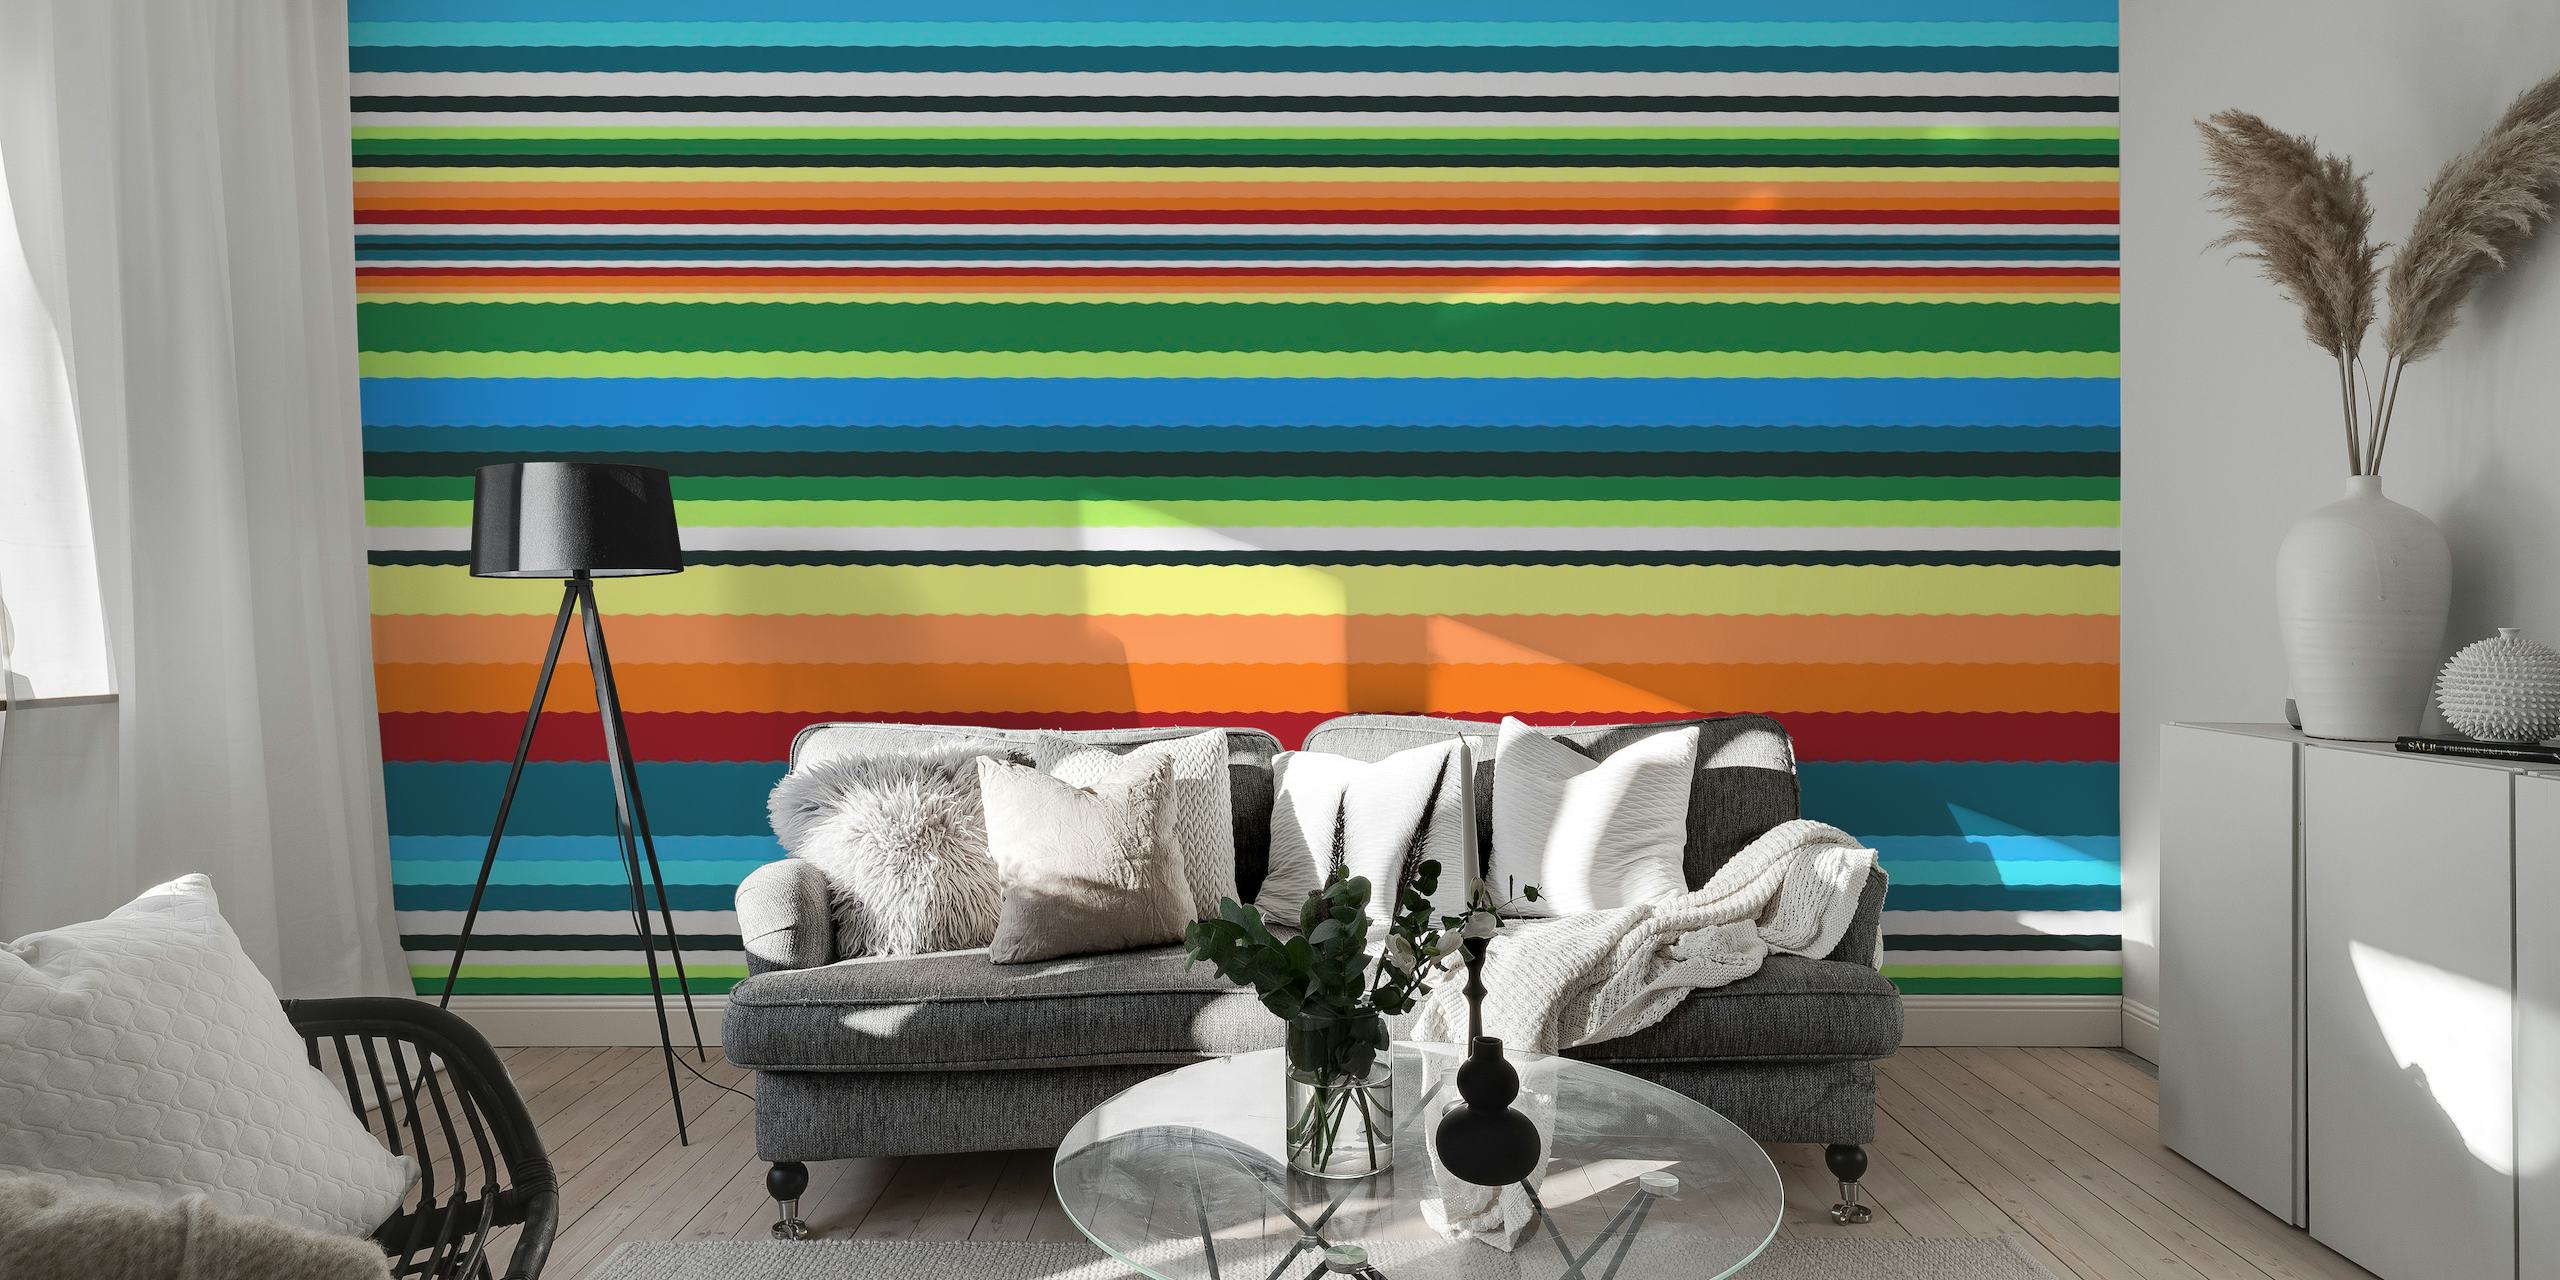 Fargerikt stripete veggmaleri med tittelen 'Bohemian Bright' med livlige linjer i forskjellige farger.